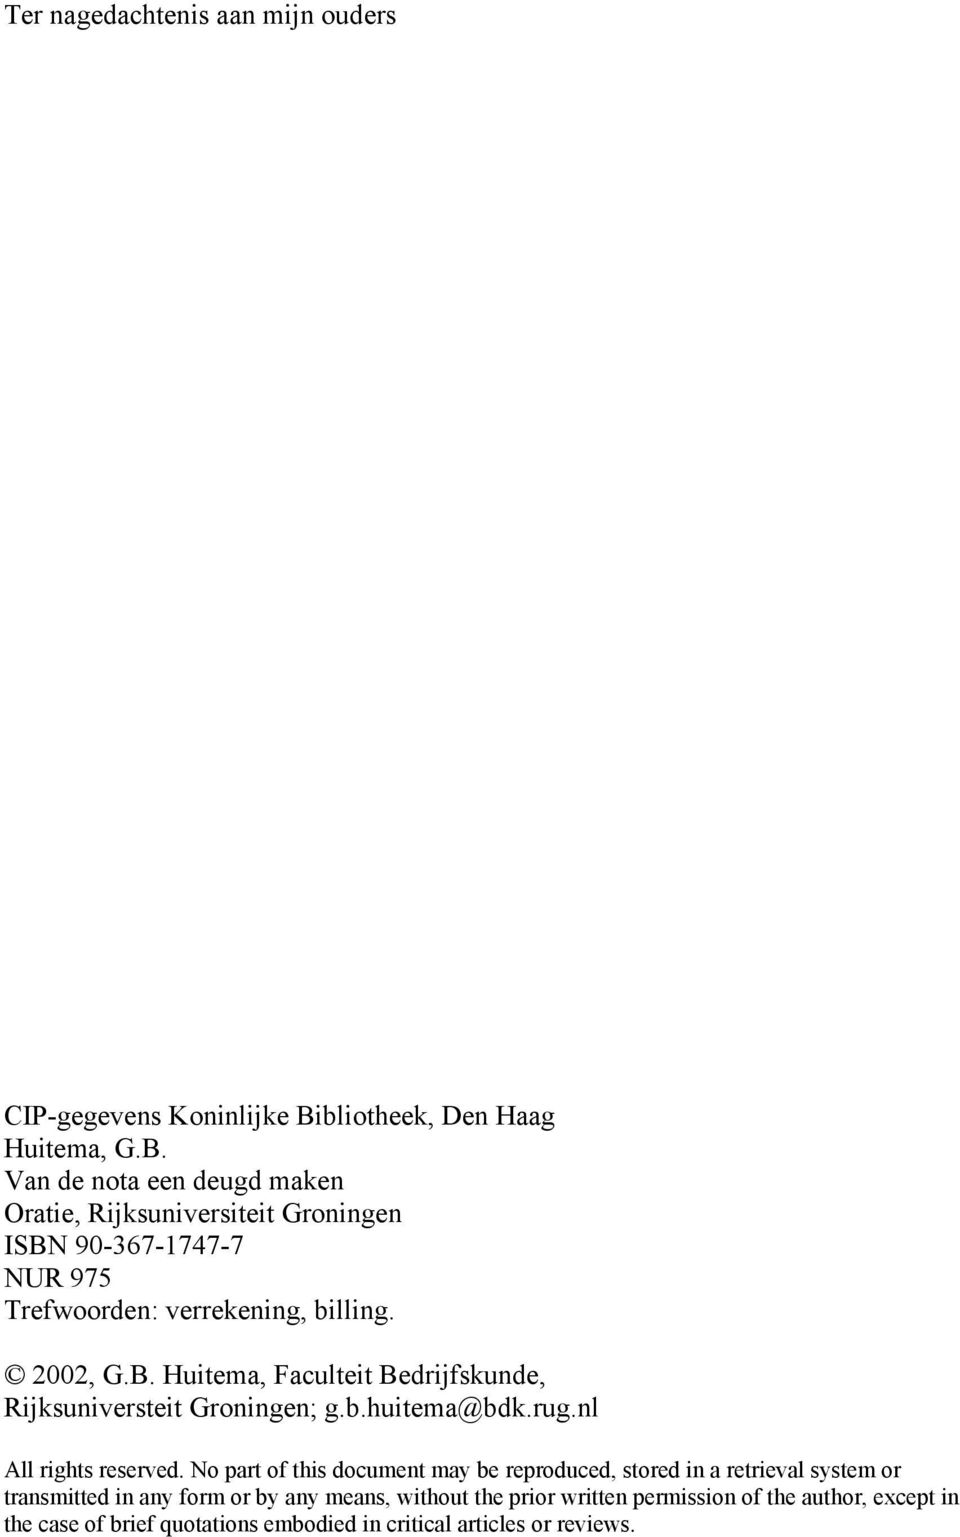 Van de nota een deugd maken Oratie, Rijksuniversiteit Groningen ISBN 90-367-1747-7 NUR 975 Trefwoorden: verrekening, billing. 2002, G.B. Huitema, Faculteit Bedrijfskunde, Rijksuniversteit Groningen; g.